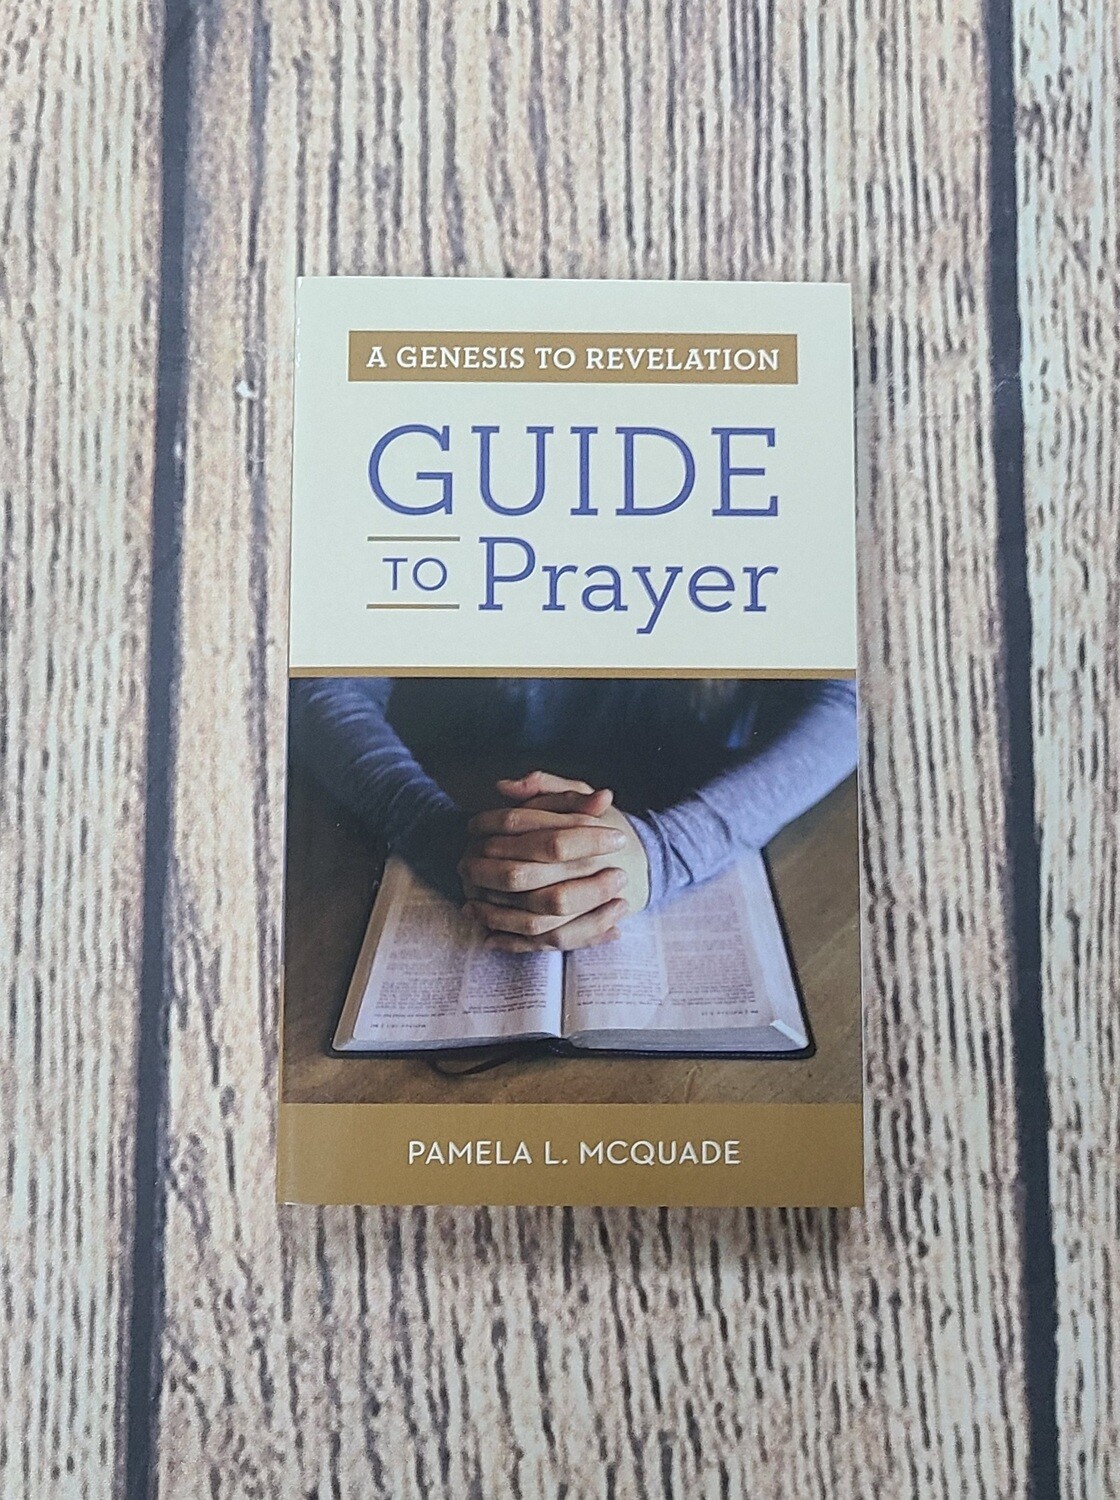 A Genesis to Revelation Guide to Prayer by Pamela L. McQuade